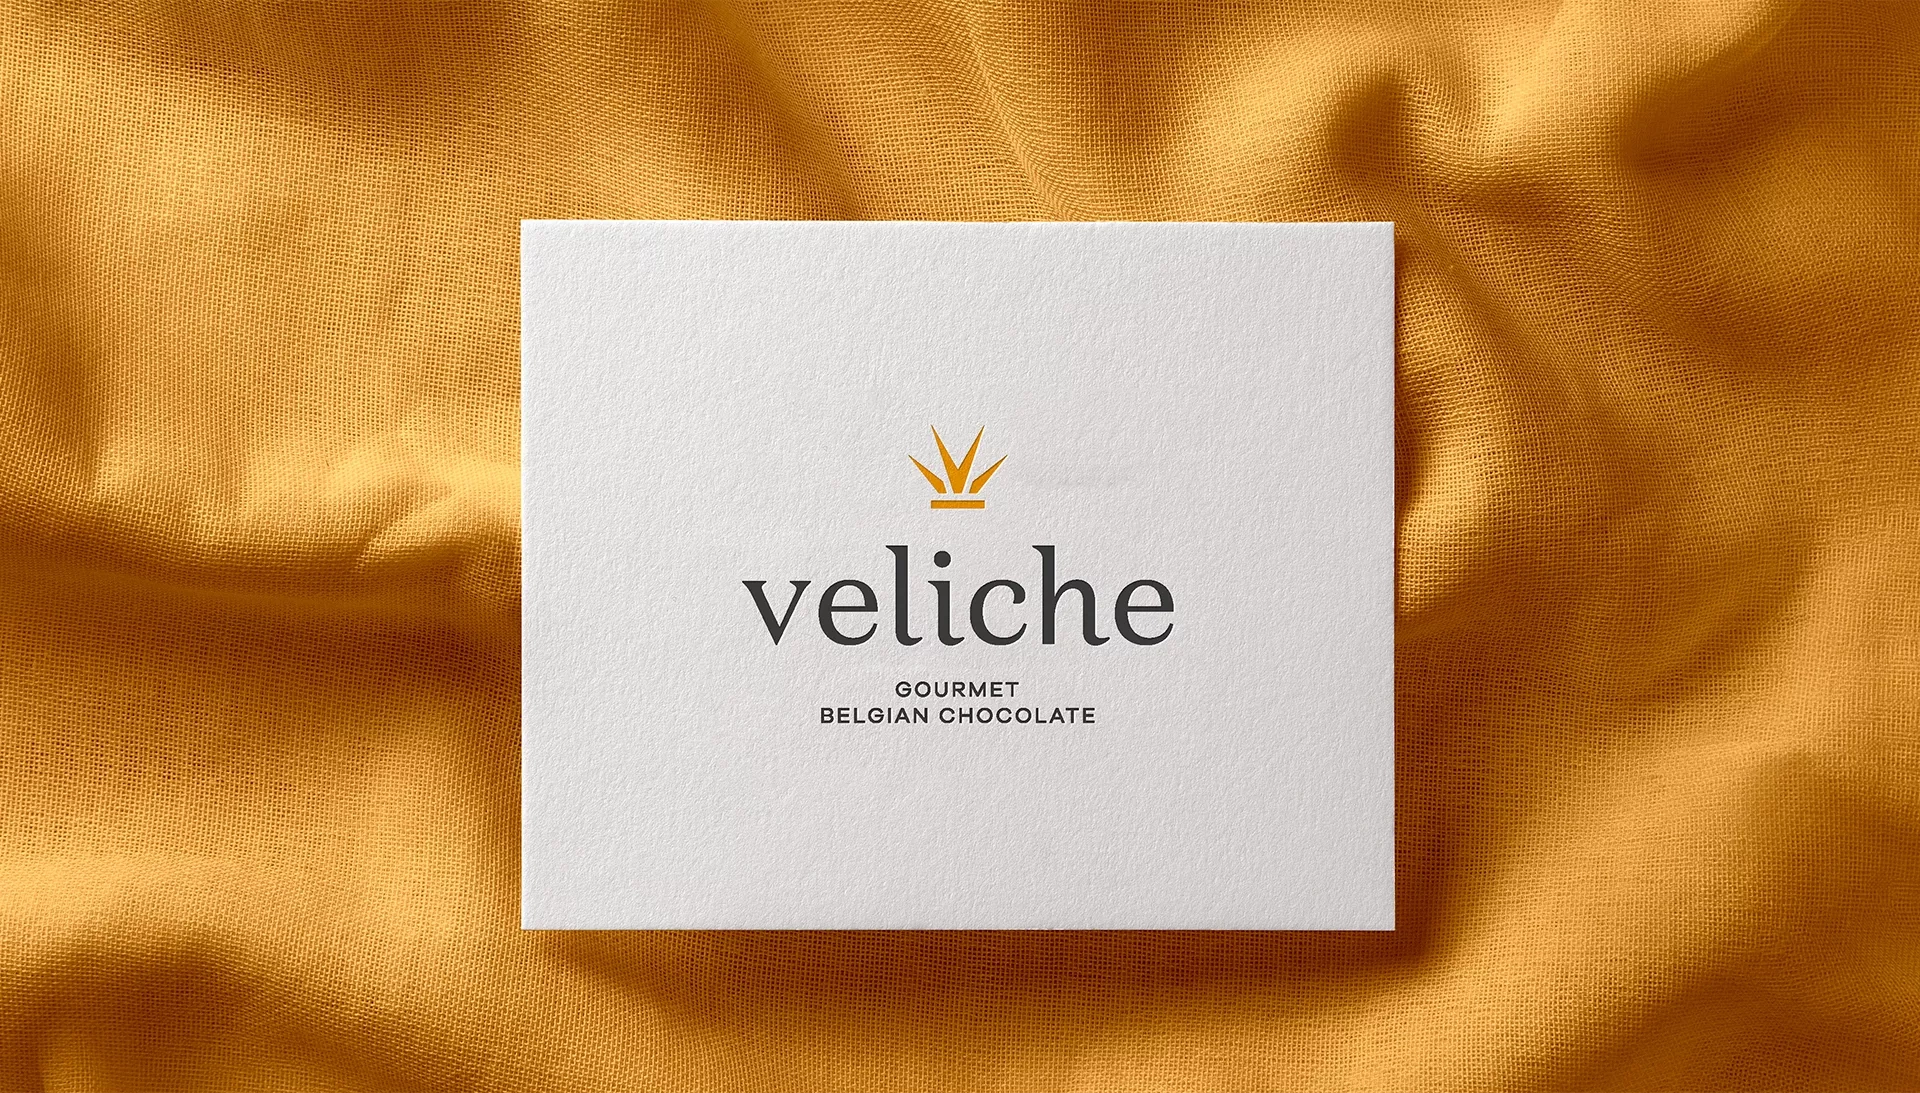 Final logo - Veliche Gourmet